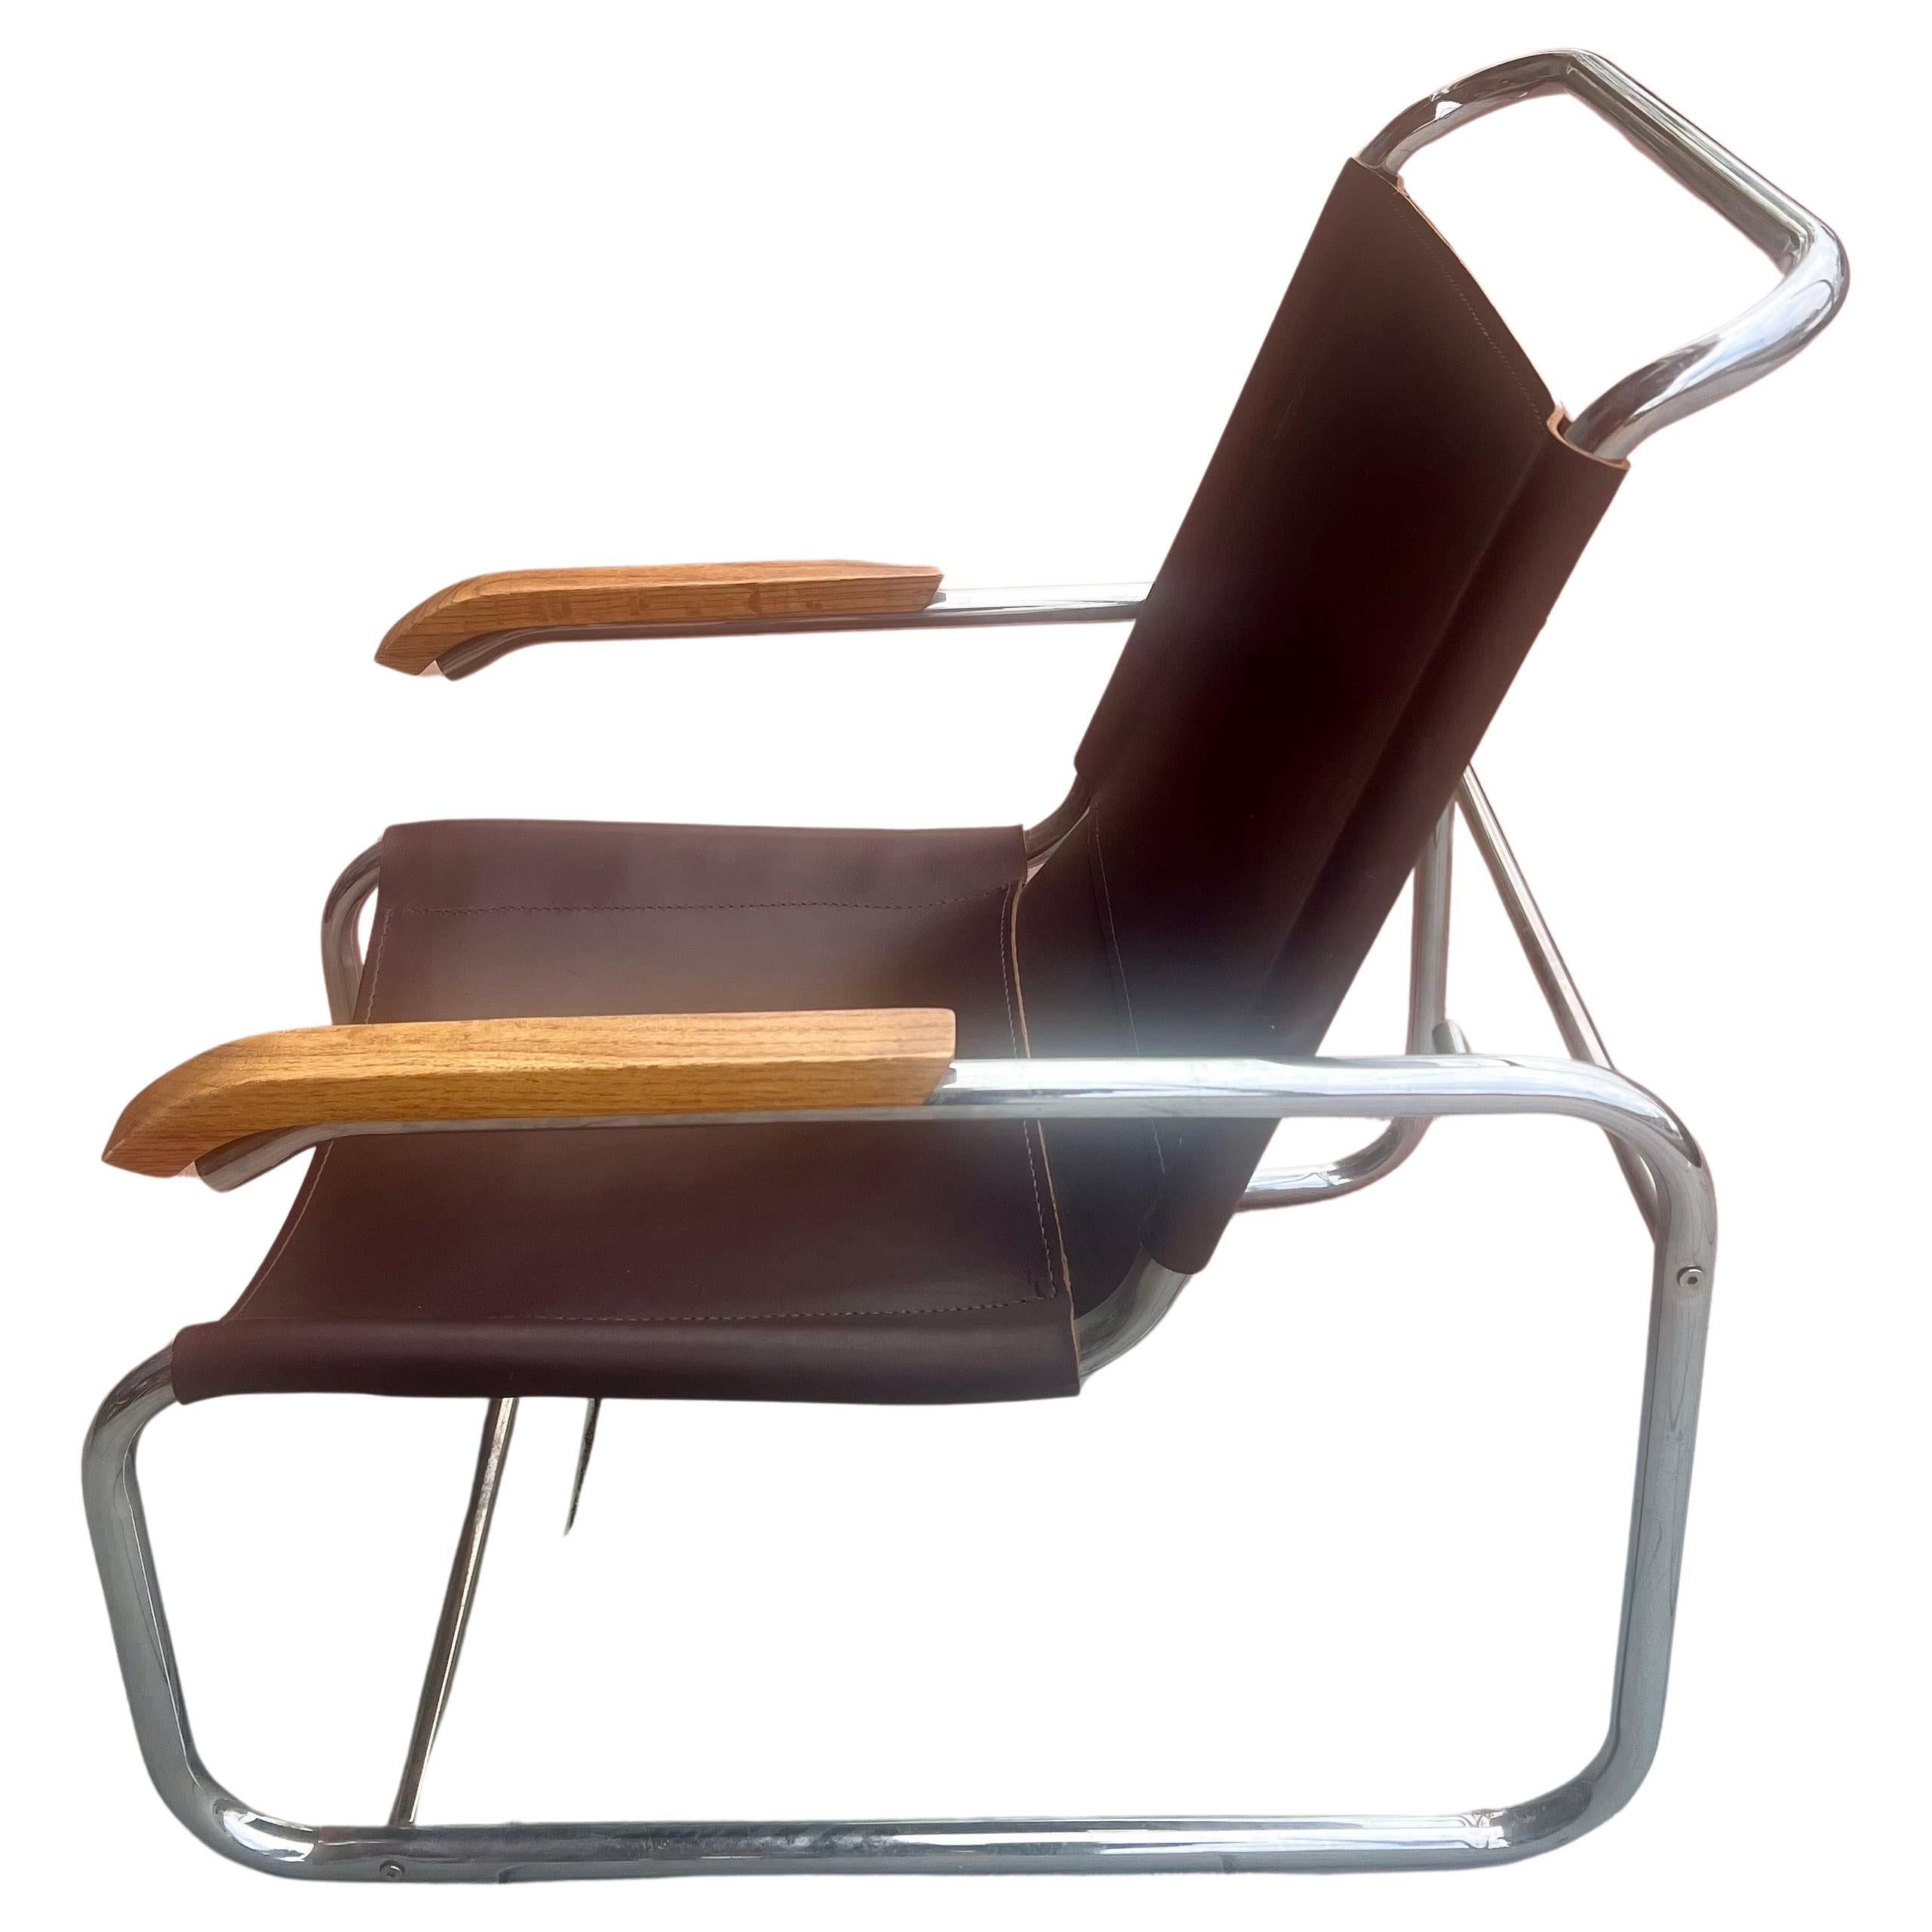 Original 1960er Freischwinger Marcel Breuer B35 brauner Ledersessel mit Armlehnen aus Eichenholz. Leder und Chrom komplett überarbeitet. Der bequemste und stilvollste Stuhl, in dem Sie jemals sitzen werden. Der Stuhl wurde neu verchromt wir setzen